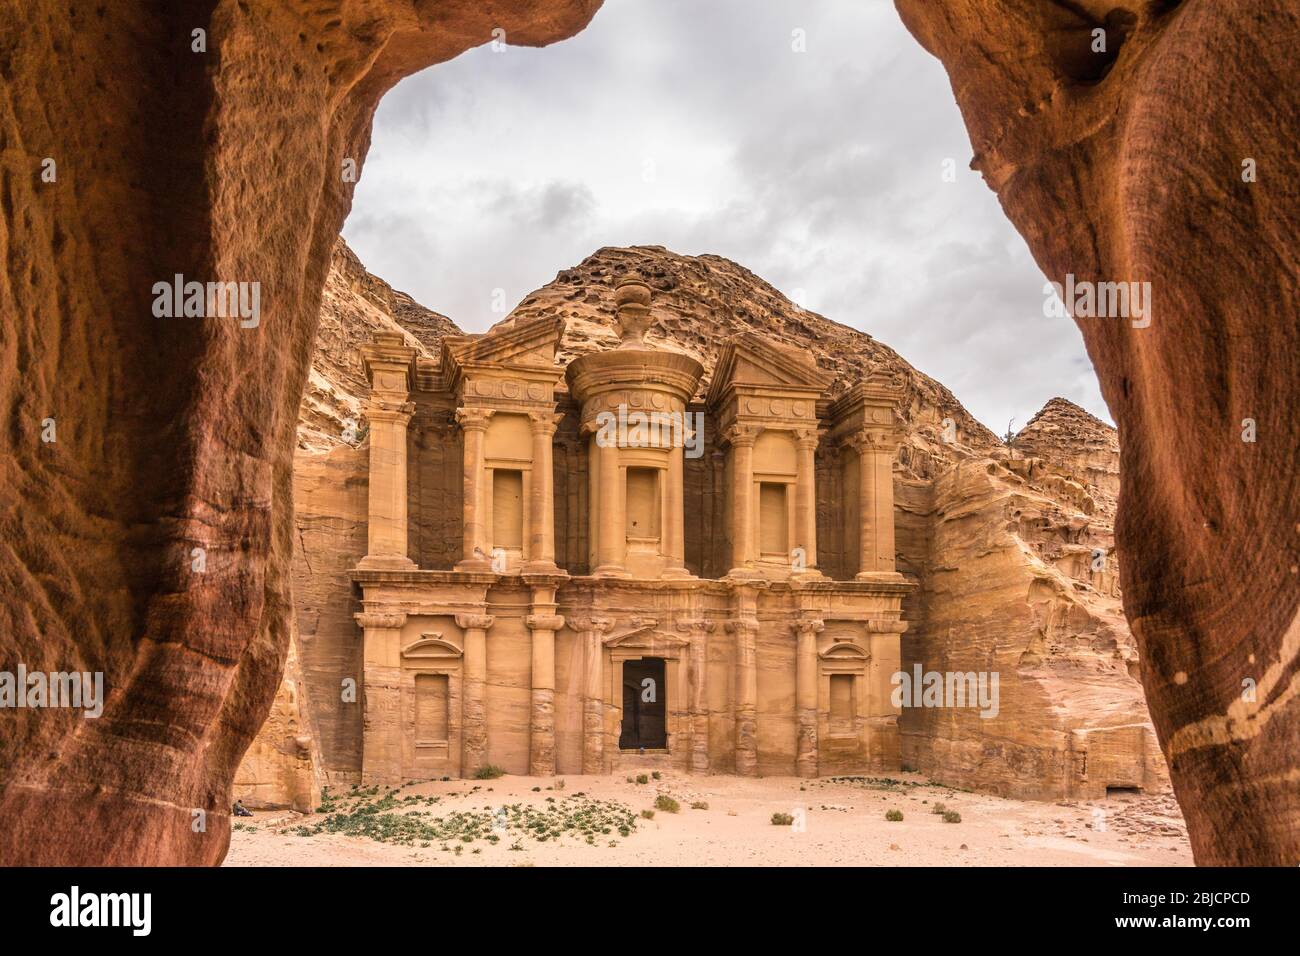 Jordan petra hi-res stock photography and images - Alamy